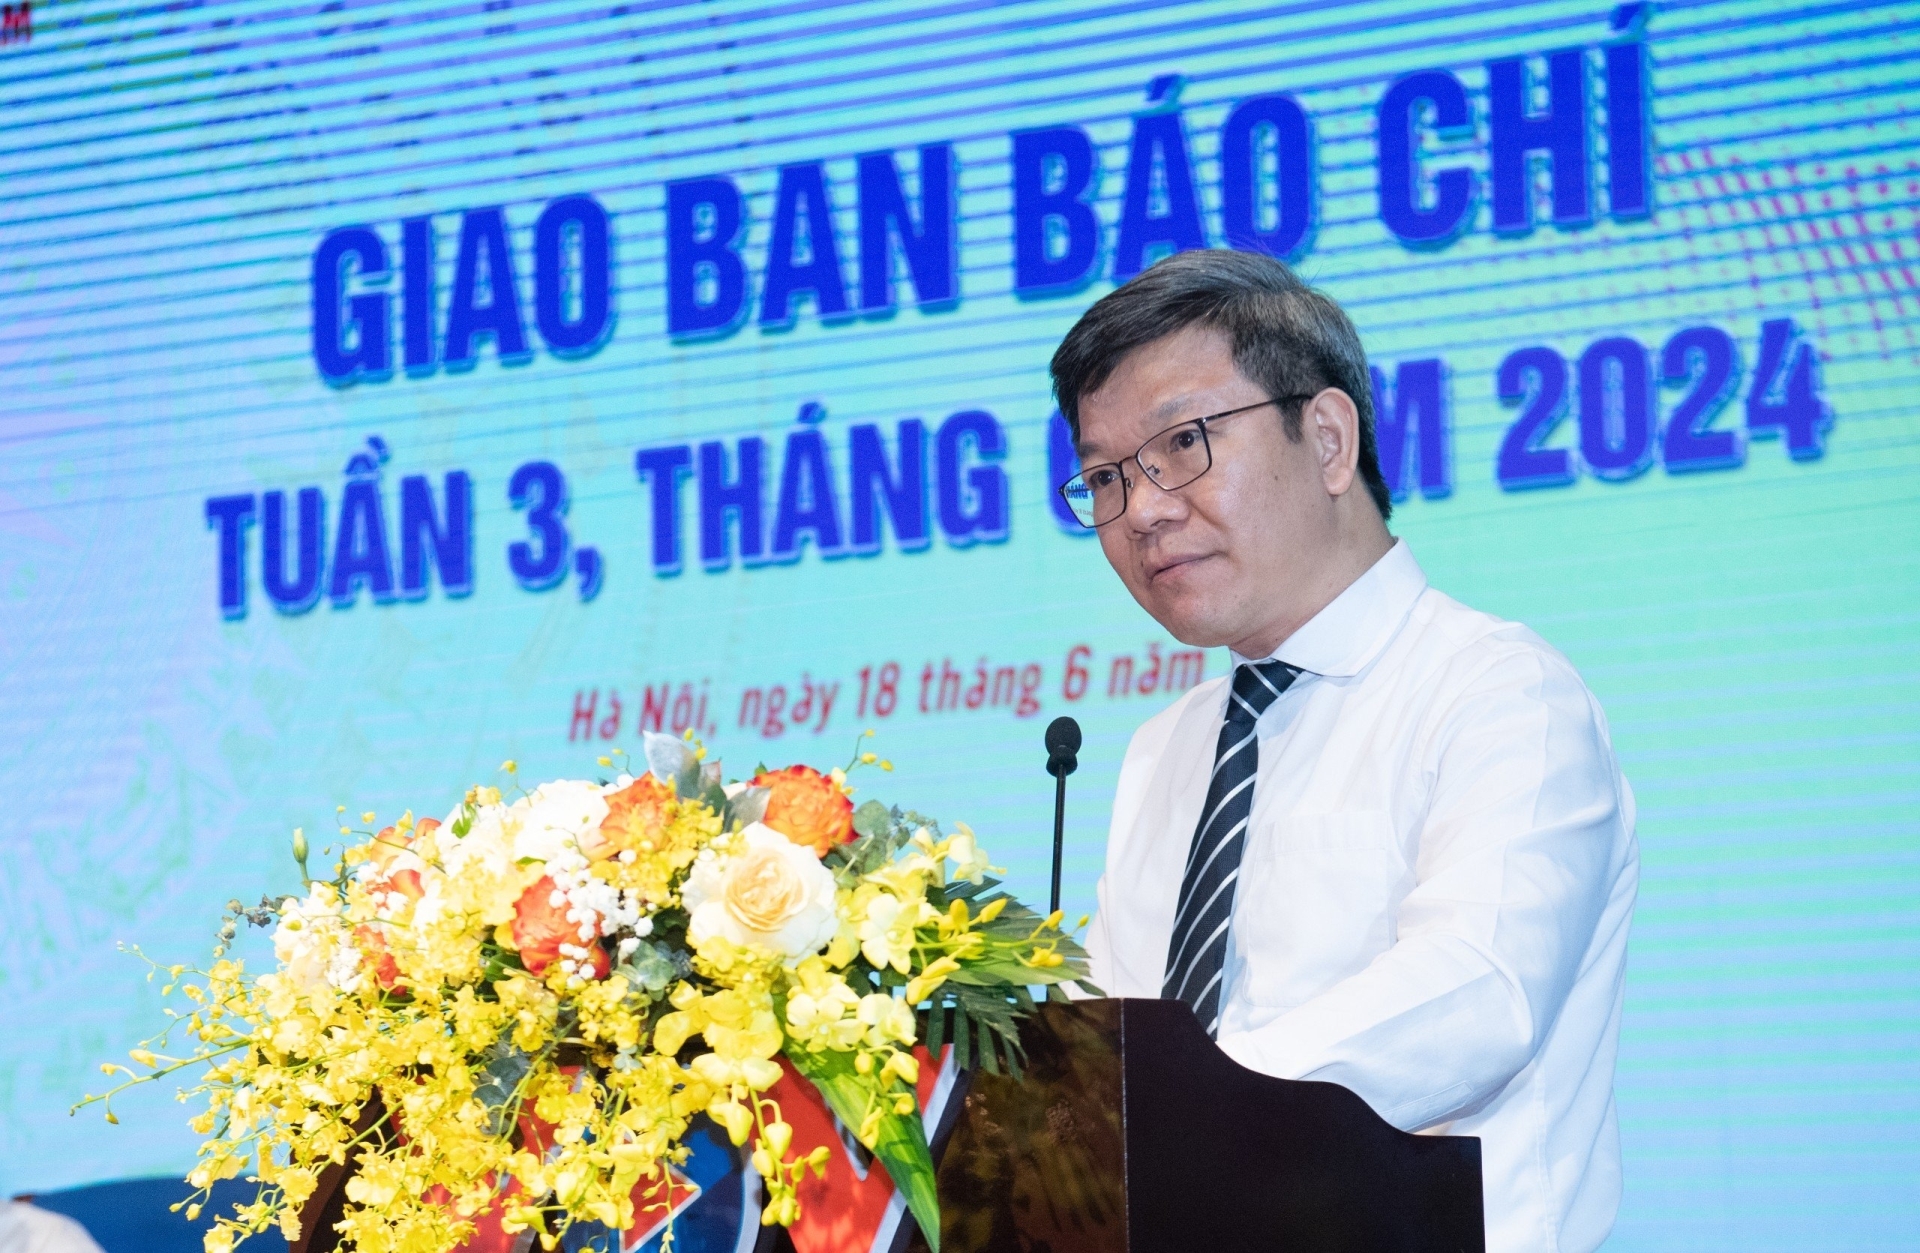 Đồng chí Tống Văn Thanh, Vụ trưởng Vụ Báo chí Xuất bản, Ban Tuyên giáo Trung ương phát biểu tại Hội nghị.